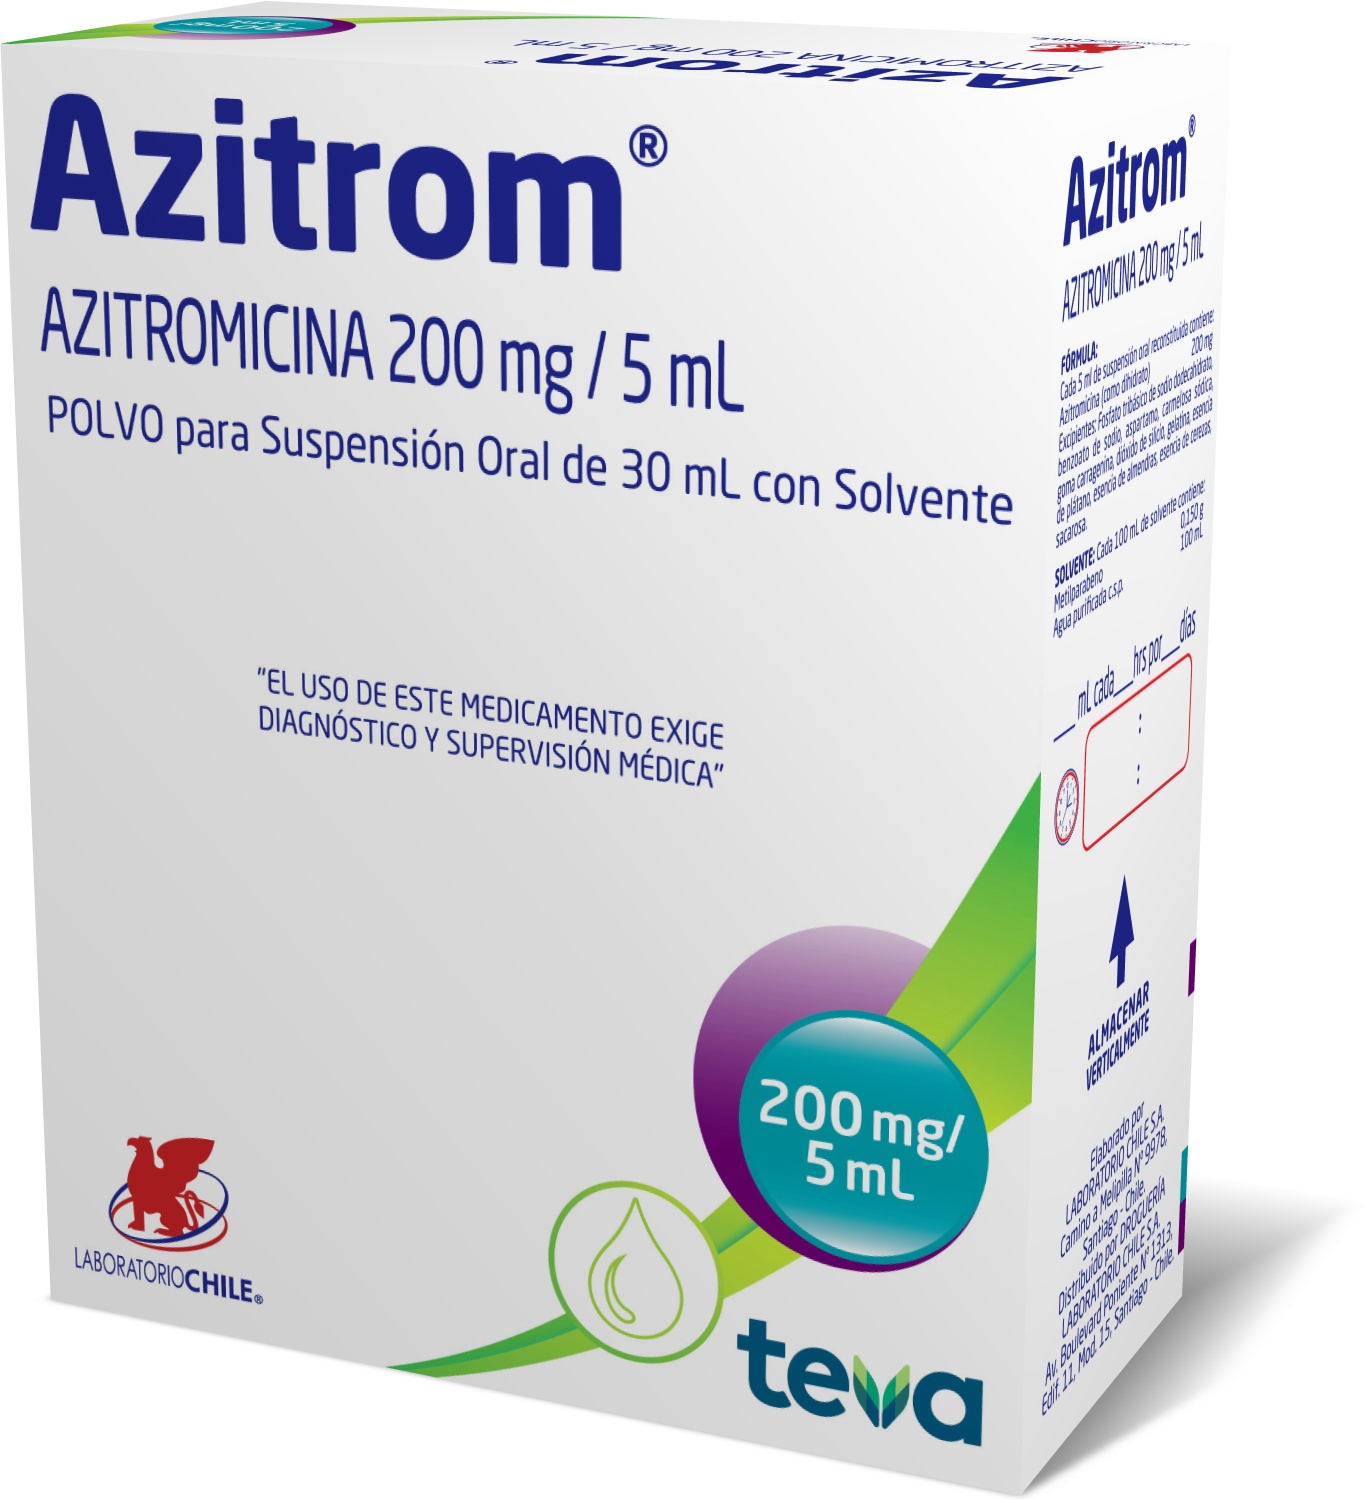 Azitrom 200 mg / 5 mL